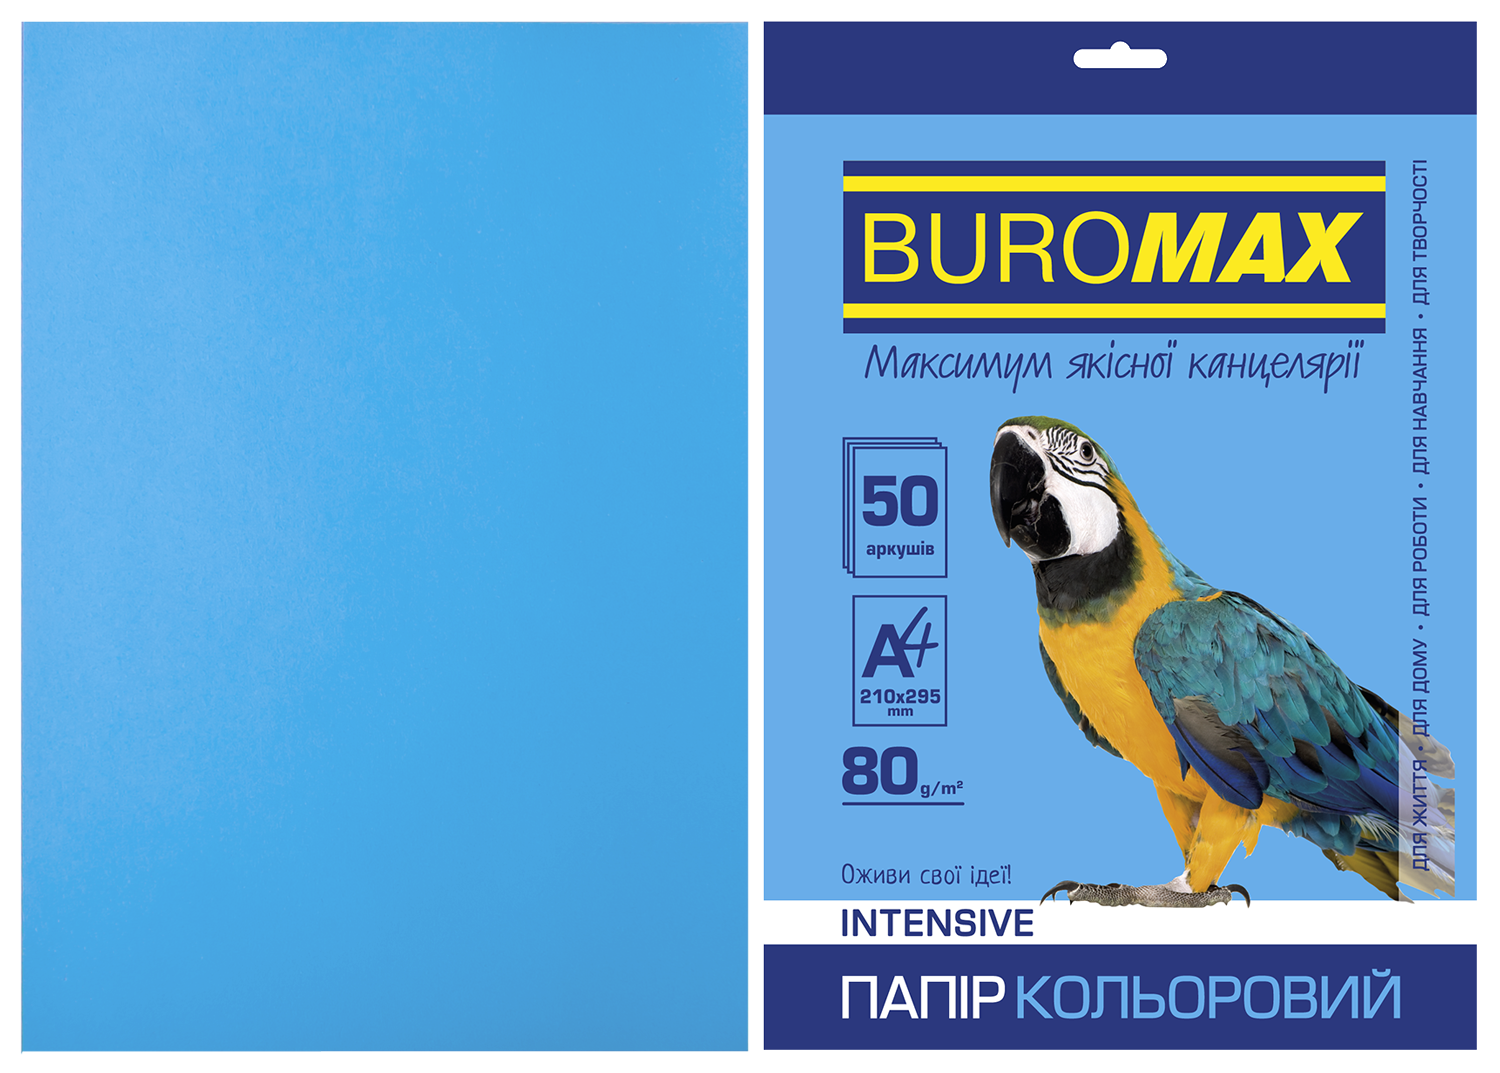 Набор цветной бумаги Buromax INTENSIVE А4, 80 г/м2, 50 листов, светло-синий - №1